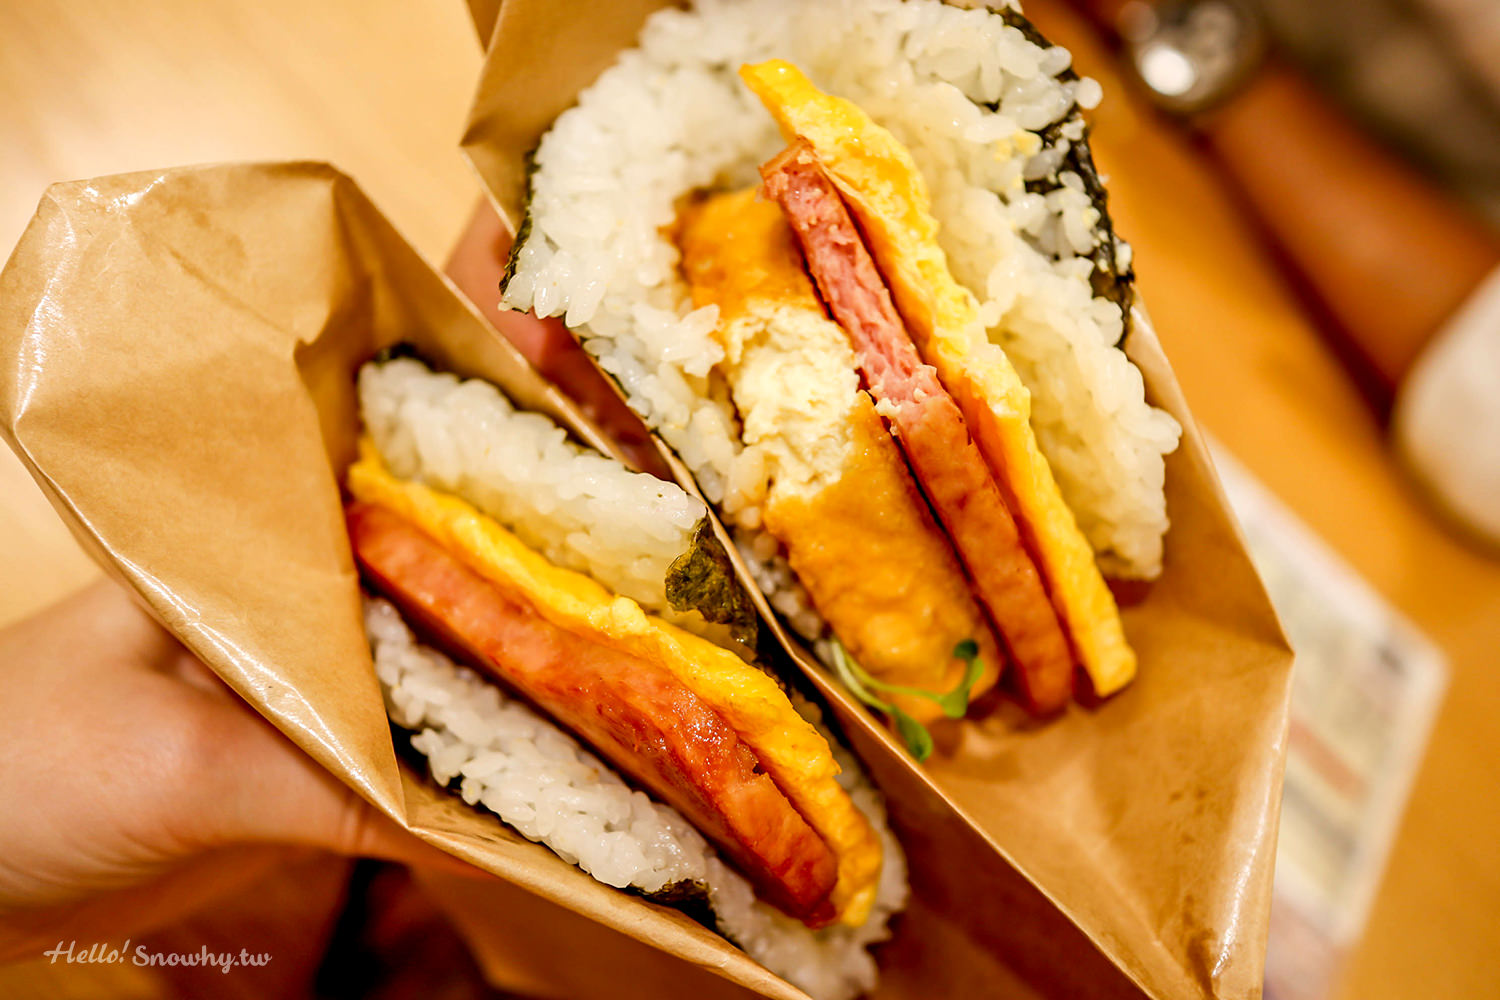 沖繩必吃美食,人氣豬肉蛋飯糰,豬肉蛋飯糰,那霸機場分店,沖繩必吃飯糰,排隊美食